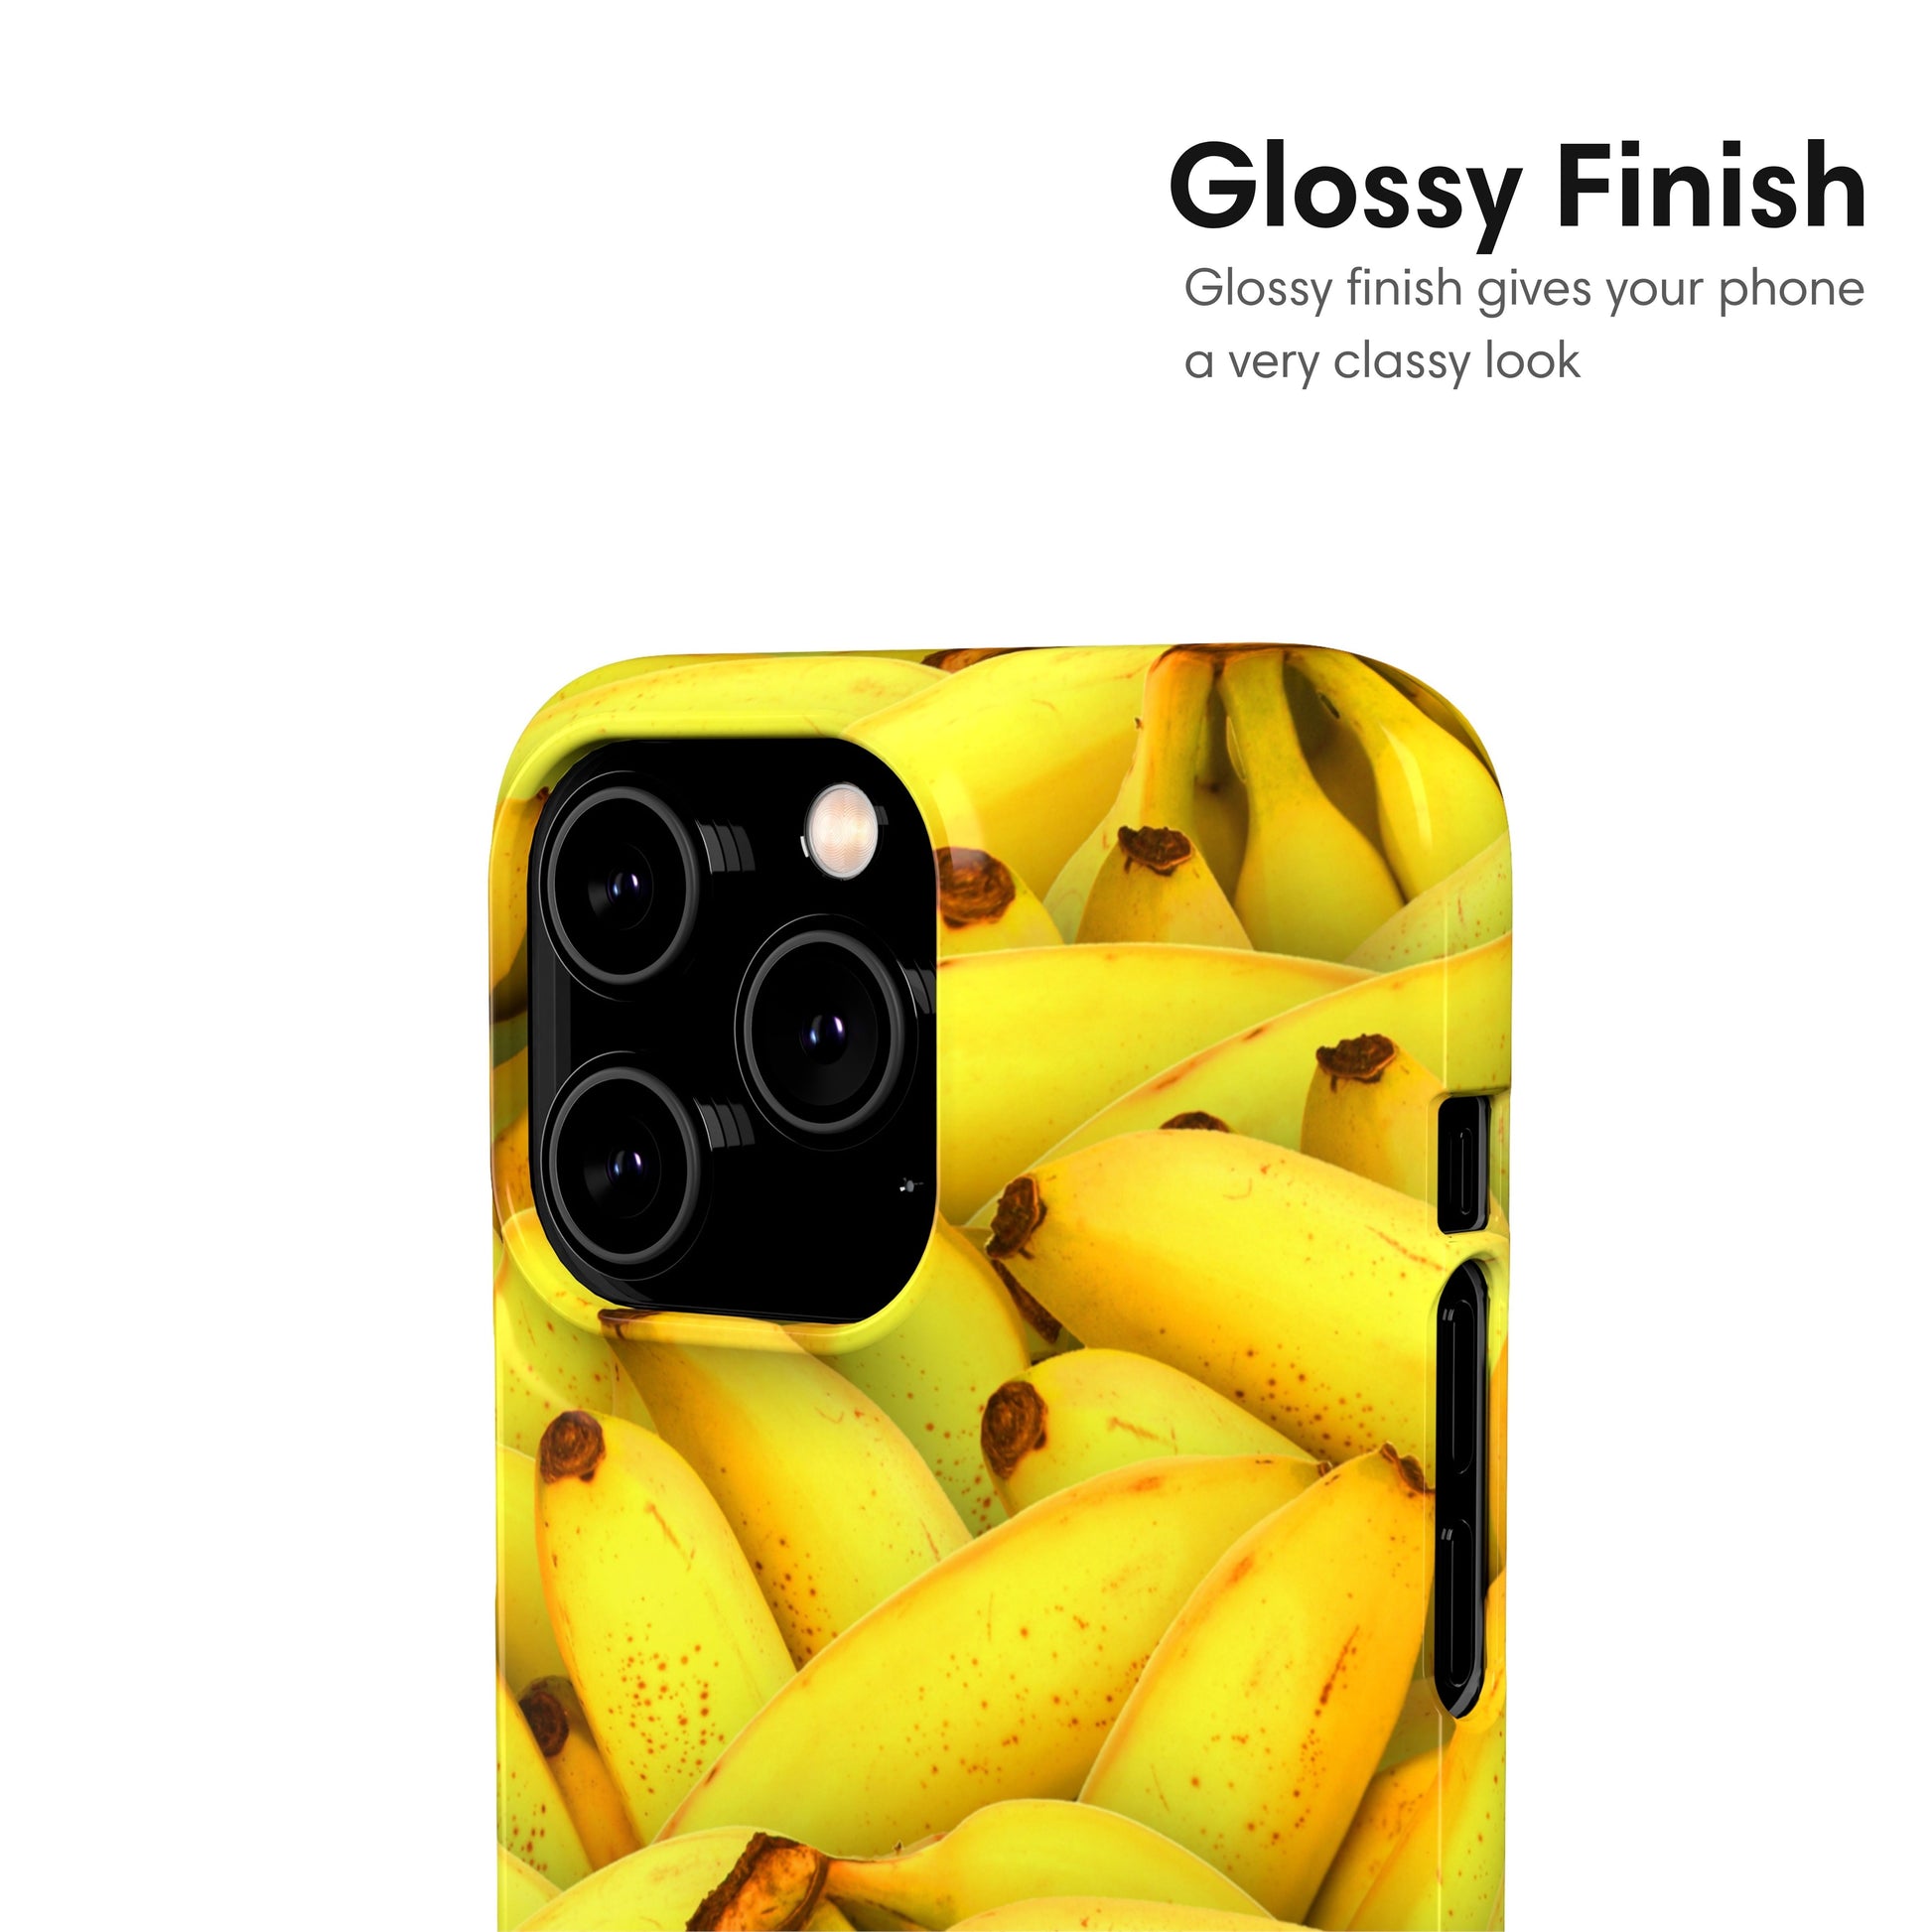 bananas snap case glossy